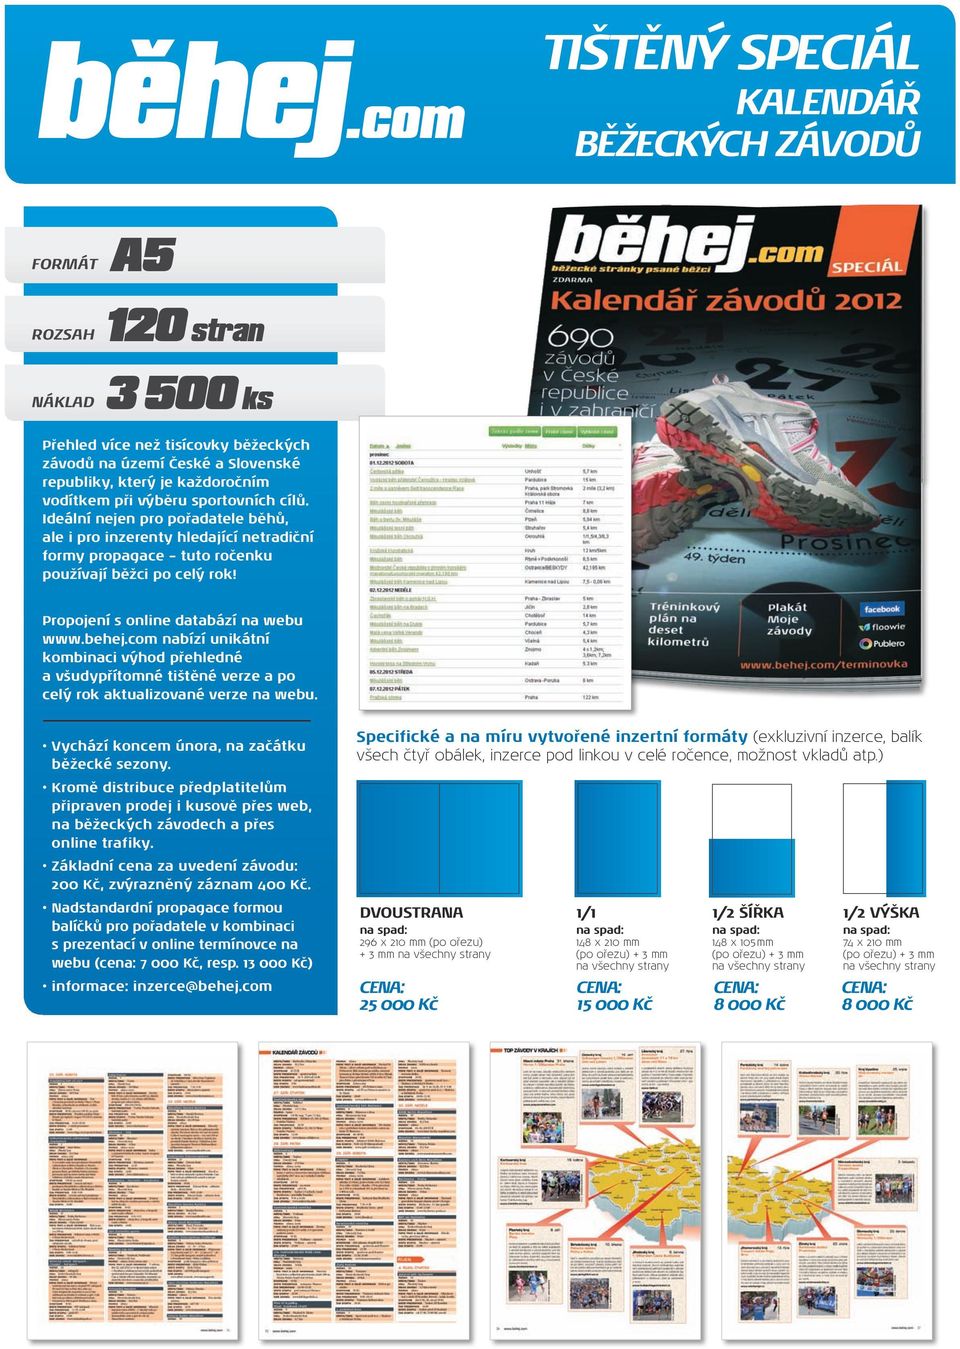 Propojení s online databází na webu www.behej.com nabízí unikátní kombinaci výhod přehledné a všudypřítomné tištěné verze a po celý rok aktualizované verze na webu.